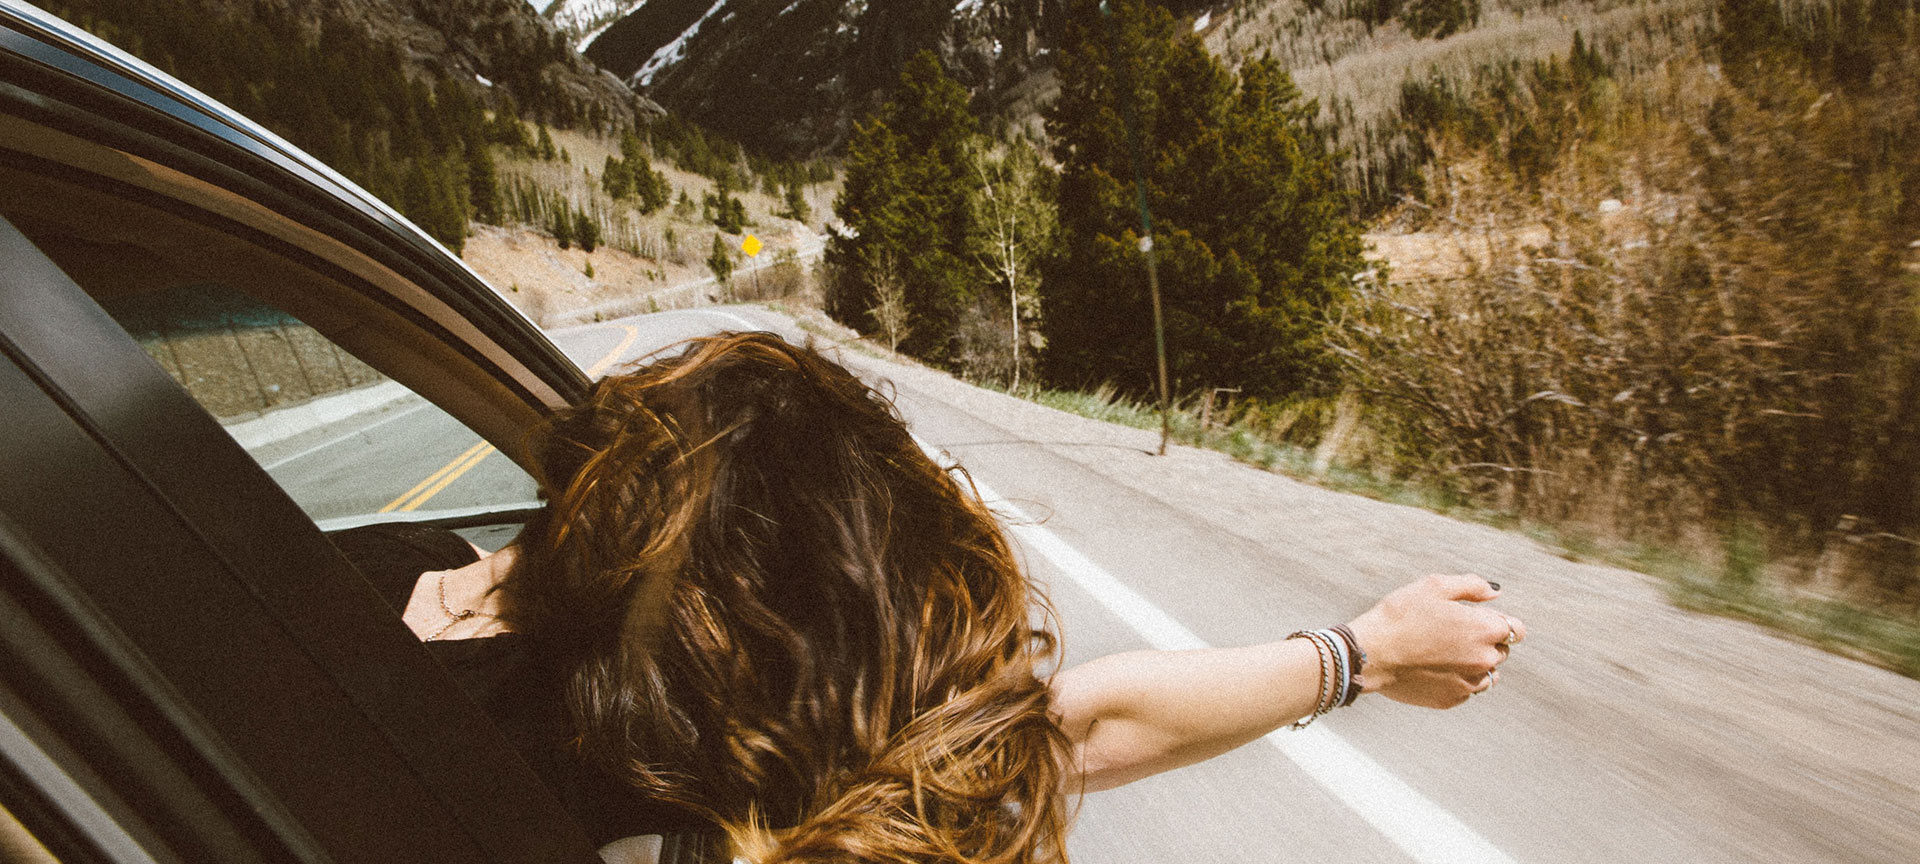 Una ragazza si affaccia dal finestrino di un’auto su una strada di montagna